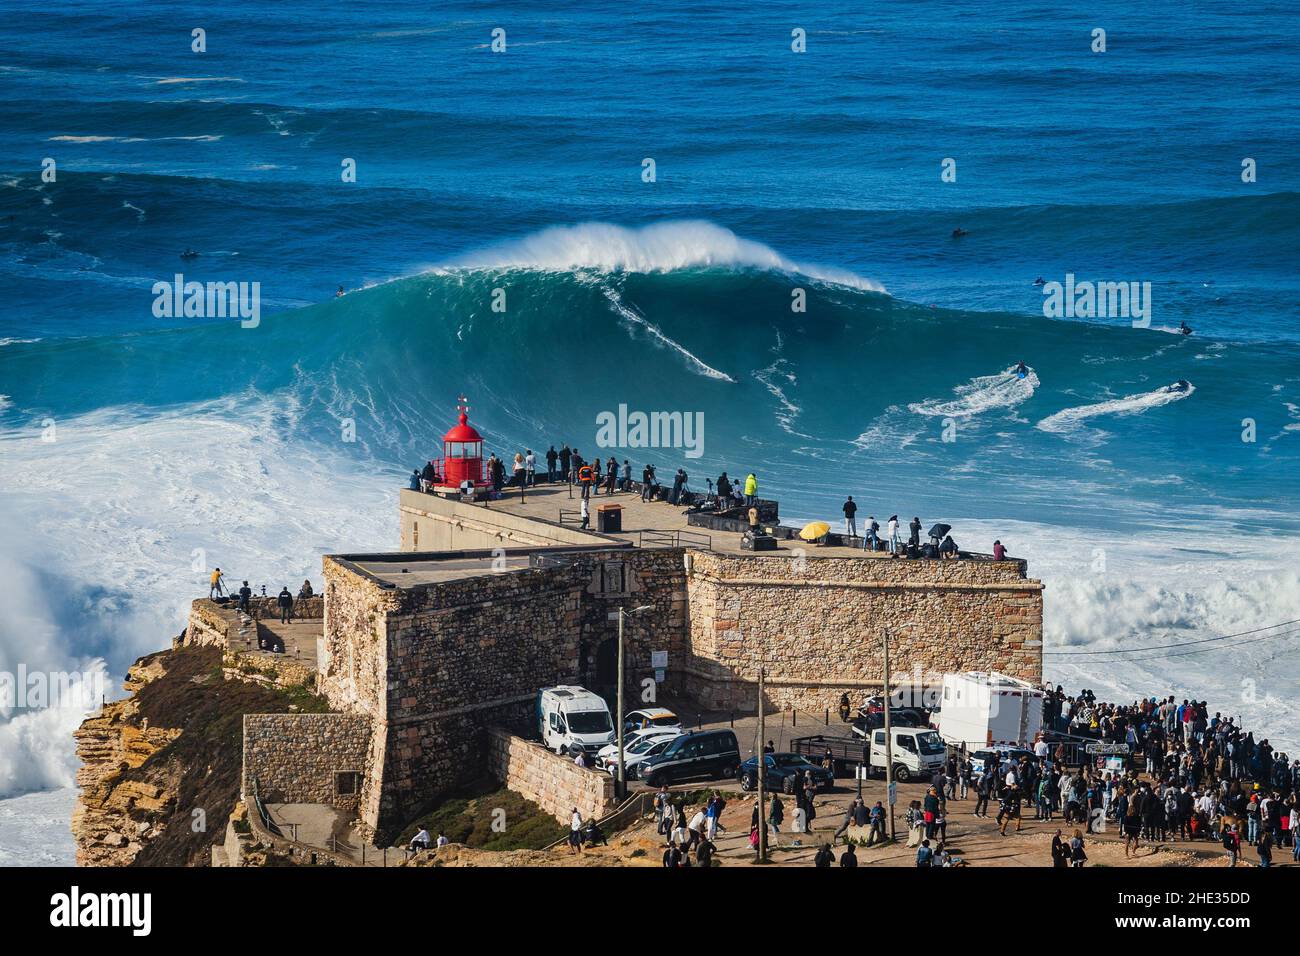 Surfeur à cheval énorme vague près du fort de Sao Miguel Arcanjo Phare à Nazaré, Portugal.Nazare est connu pour avoir les plus grandes vagues dans t Banque D'Images